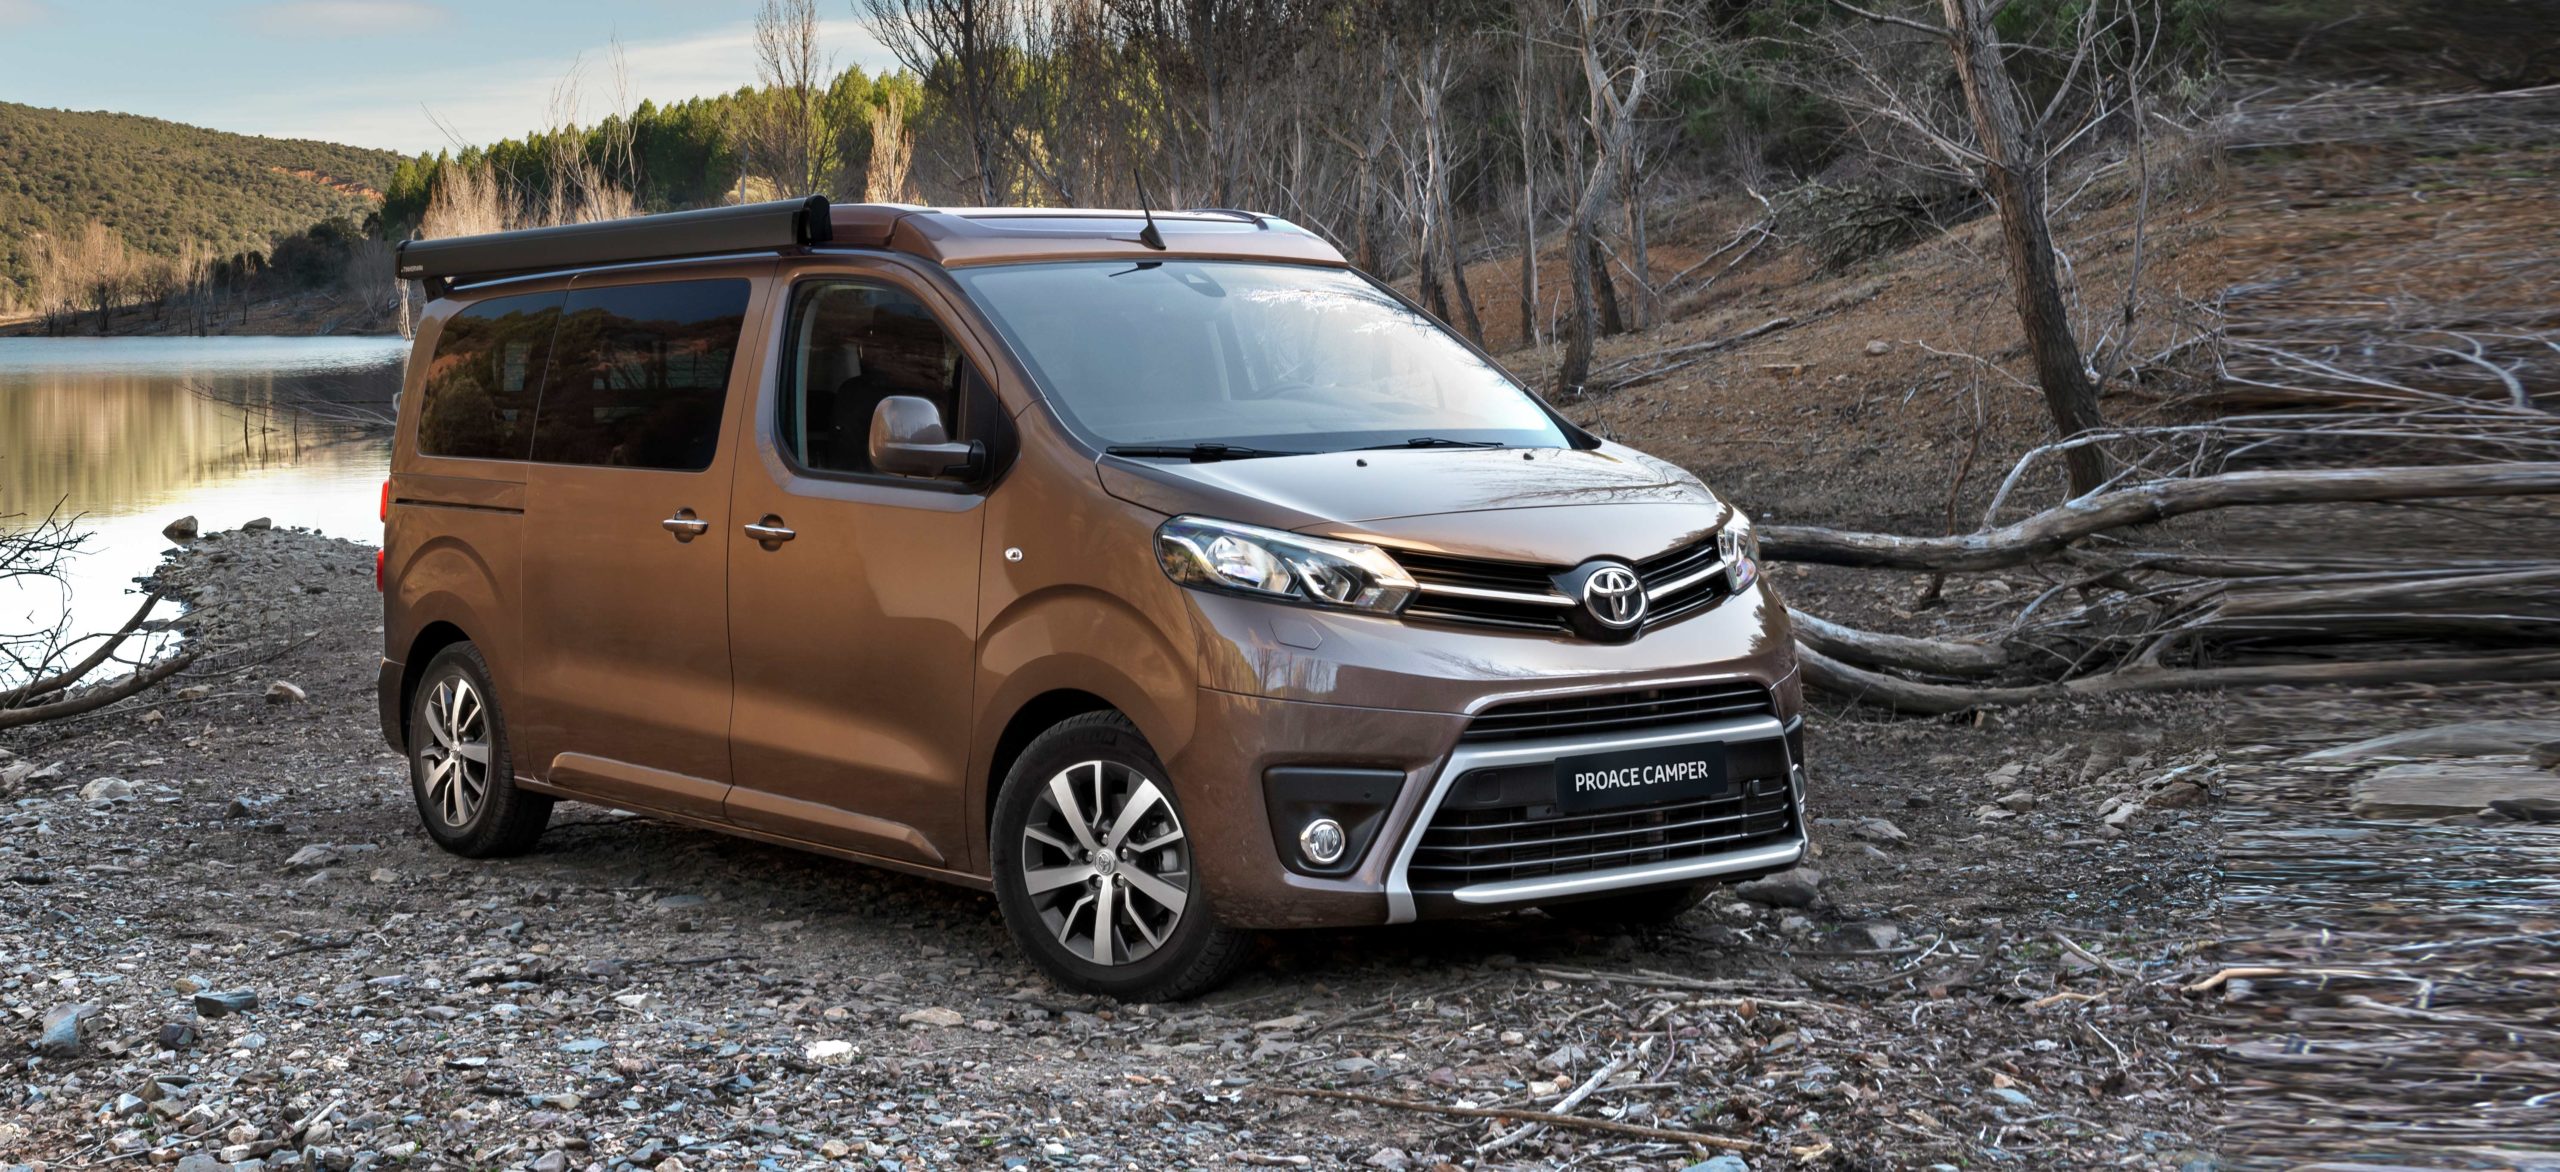 Toyota PROACE Verso CAMPER, para los más aventureros